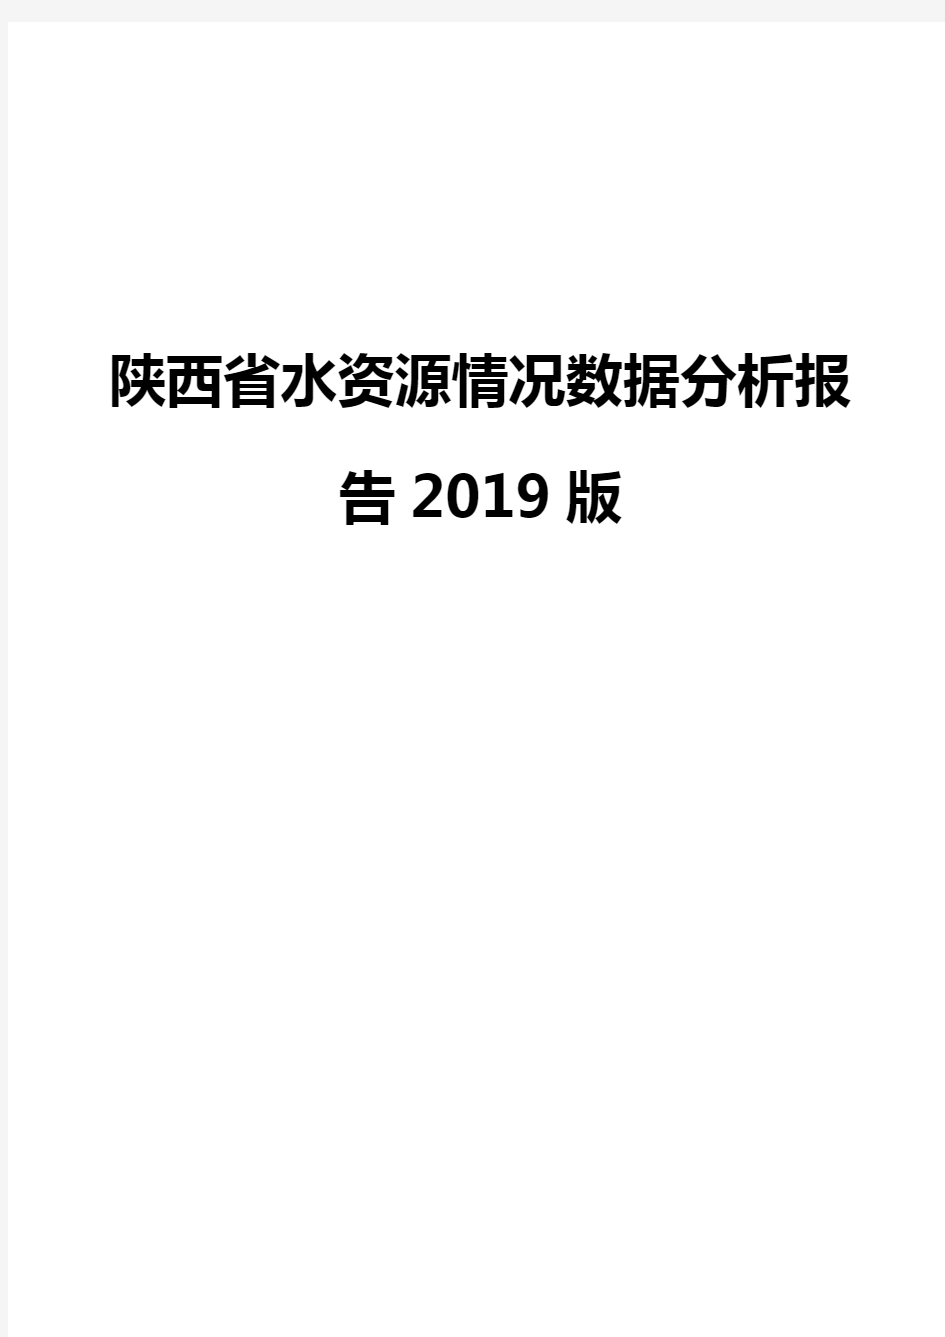 陕西省水资源情况数据分析报告2019版